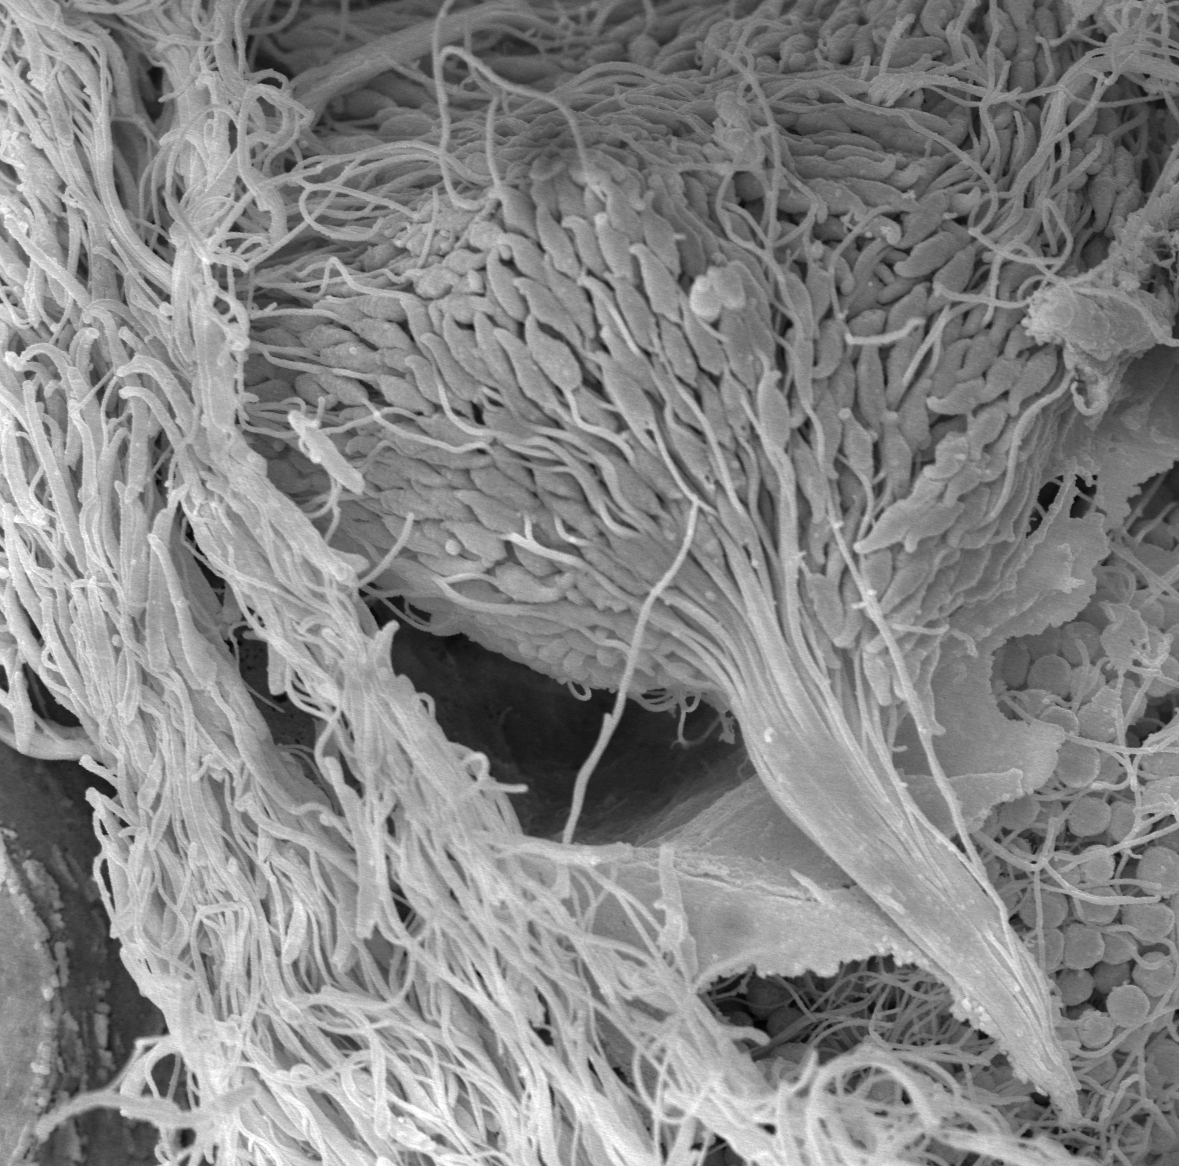 Biegunowy układ spermatyd w końcowej fazie spermiogenezy u Glandulocauda melanogenys